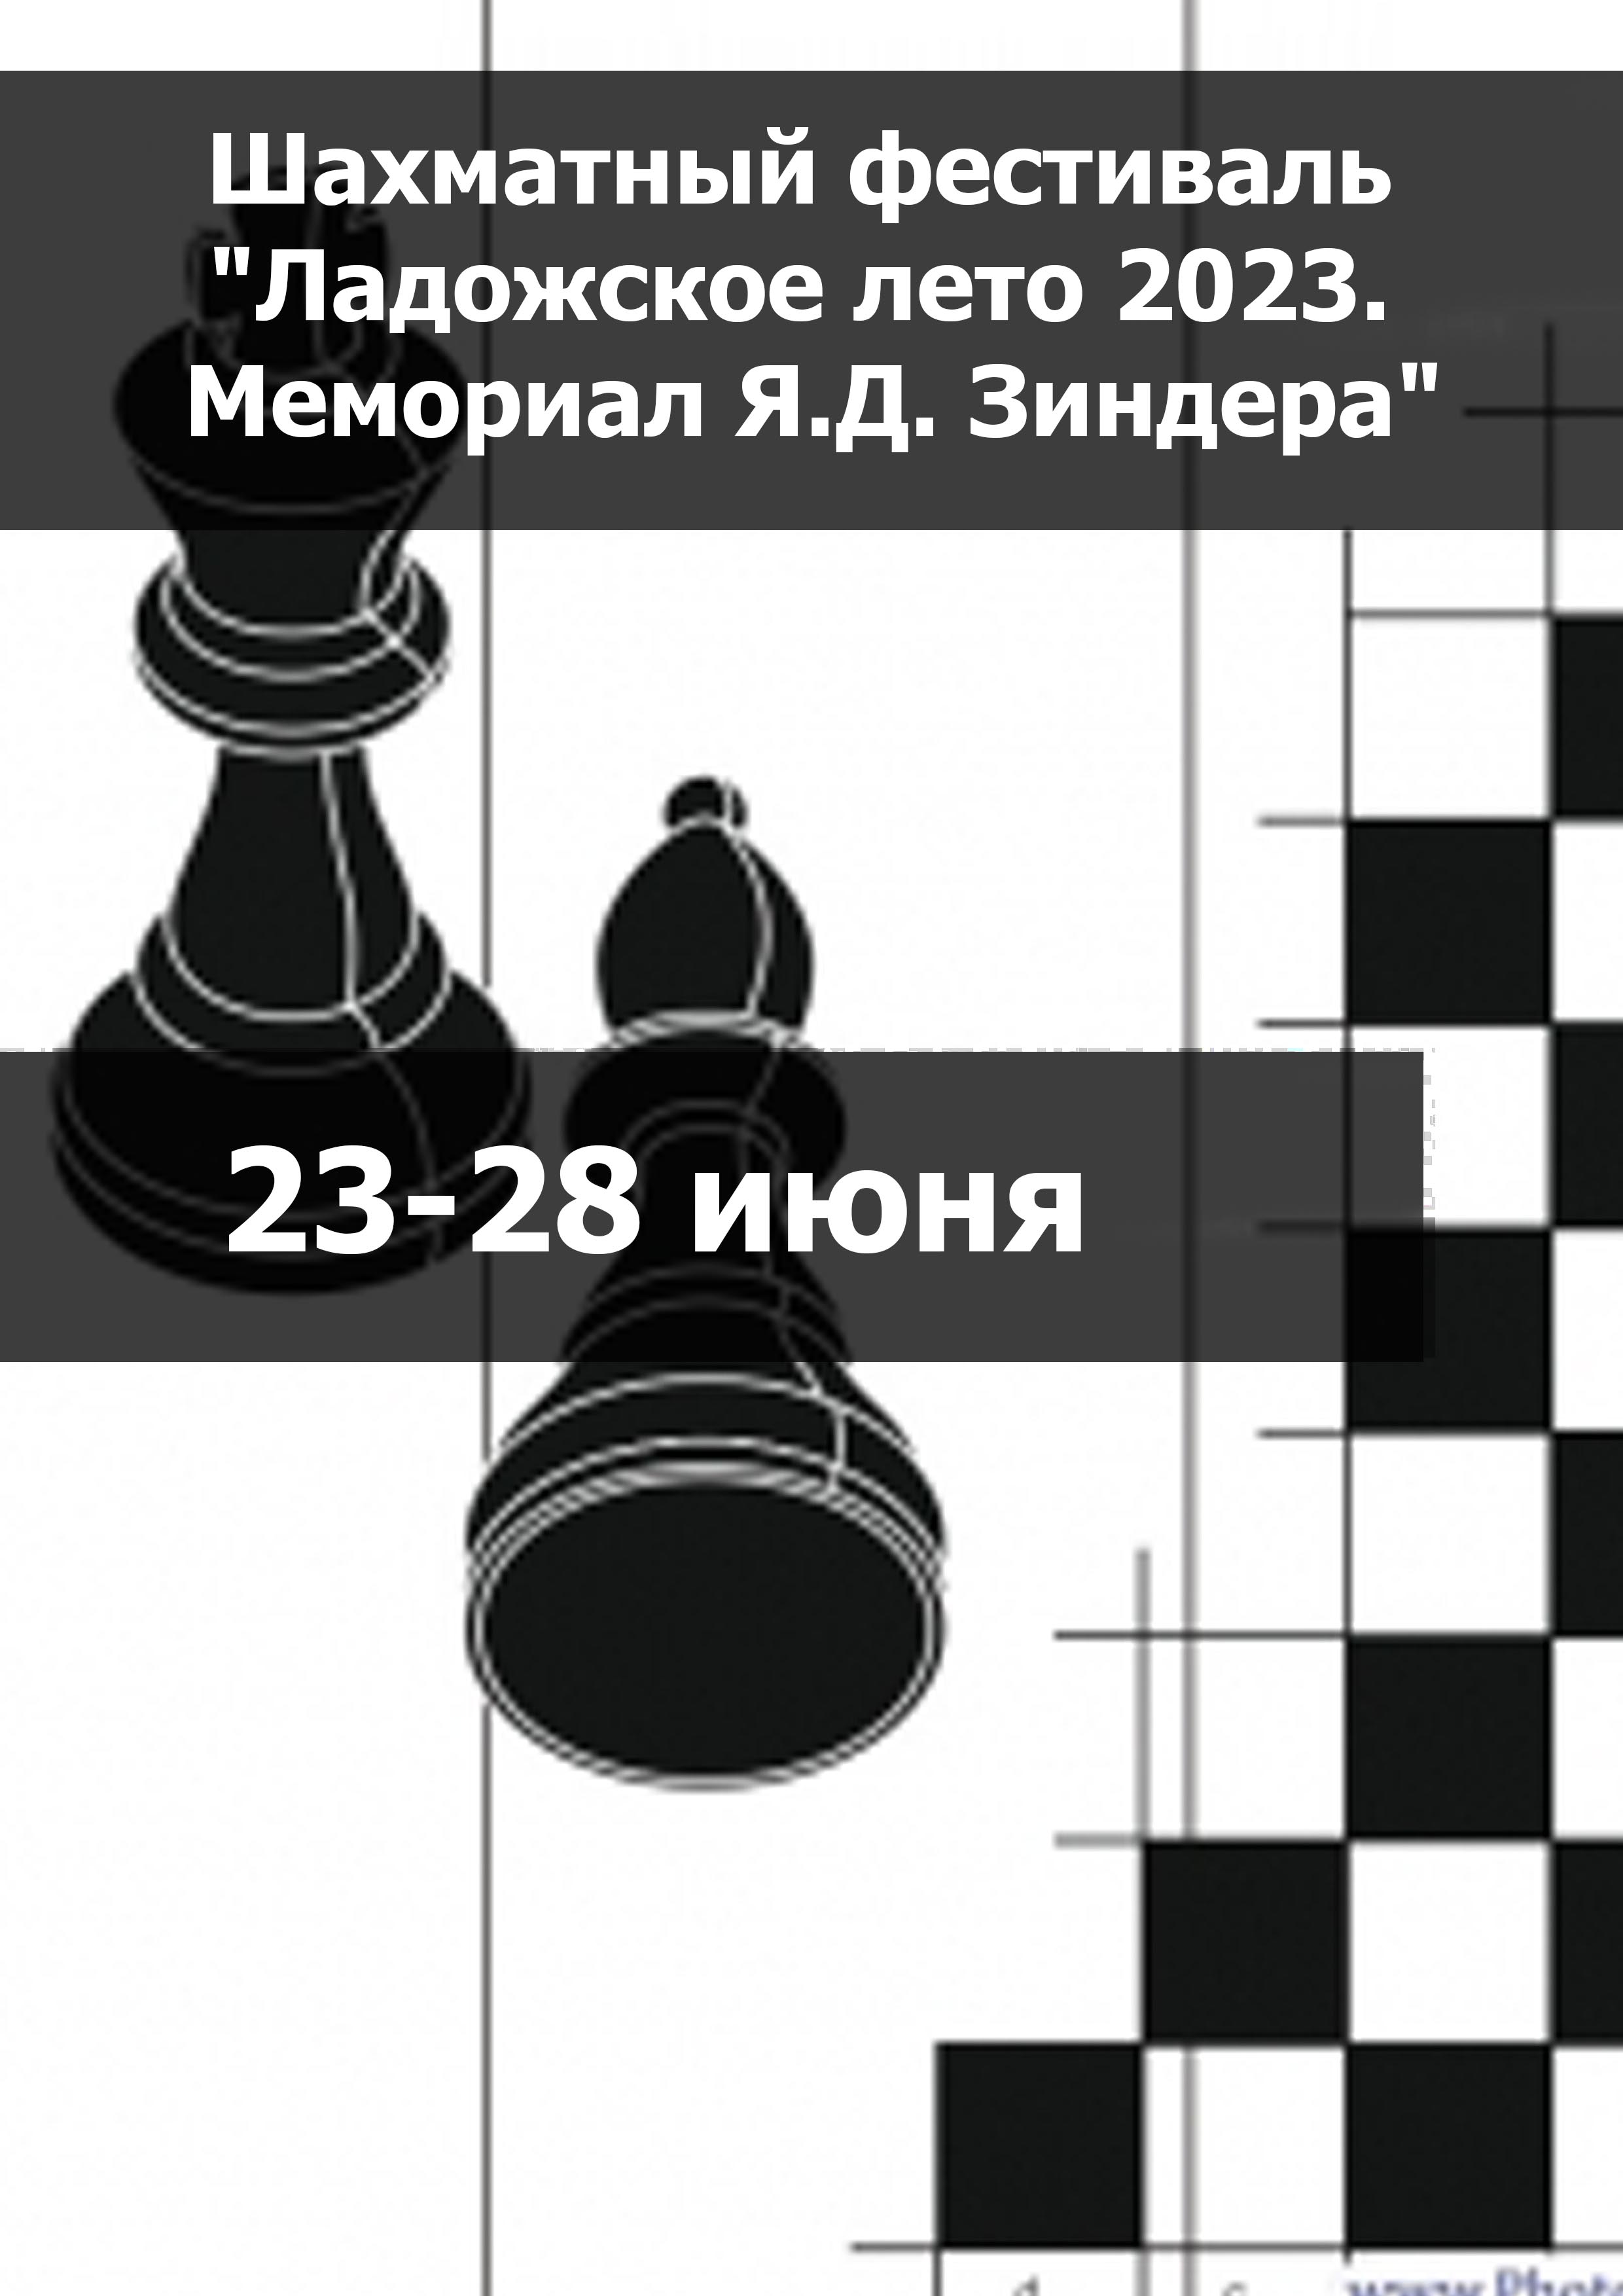 Шахматный фестиваль "Ладожское лето 2023. Мемориал Я.Д. Зиндера" 23 июня 2023 года 